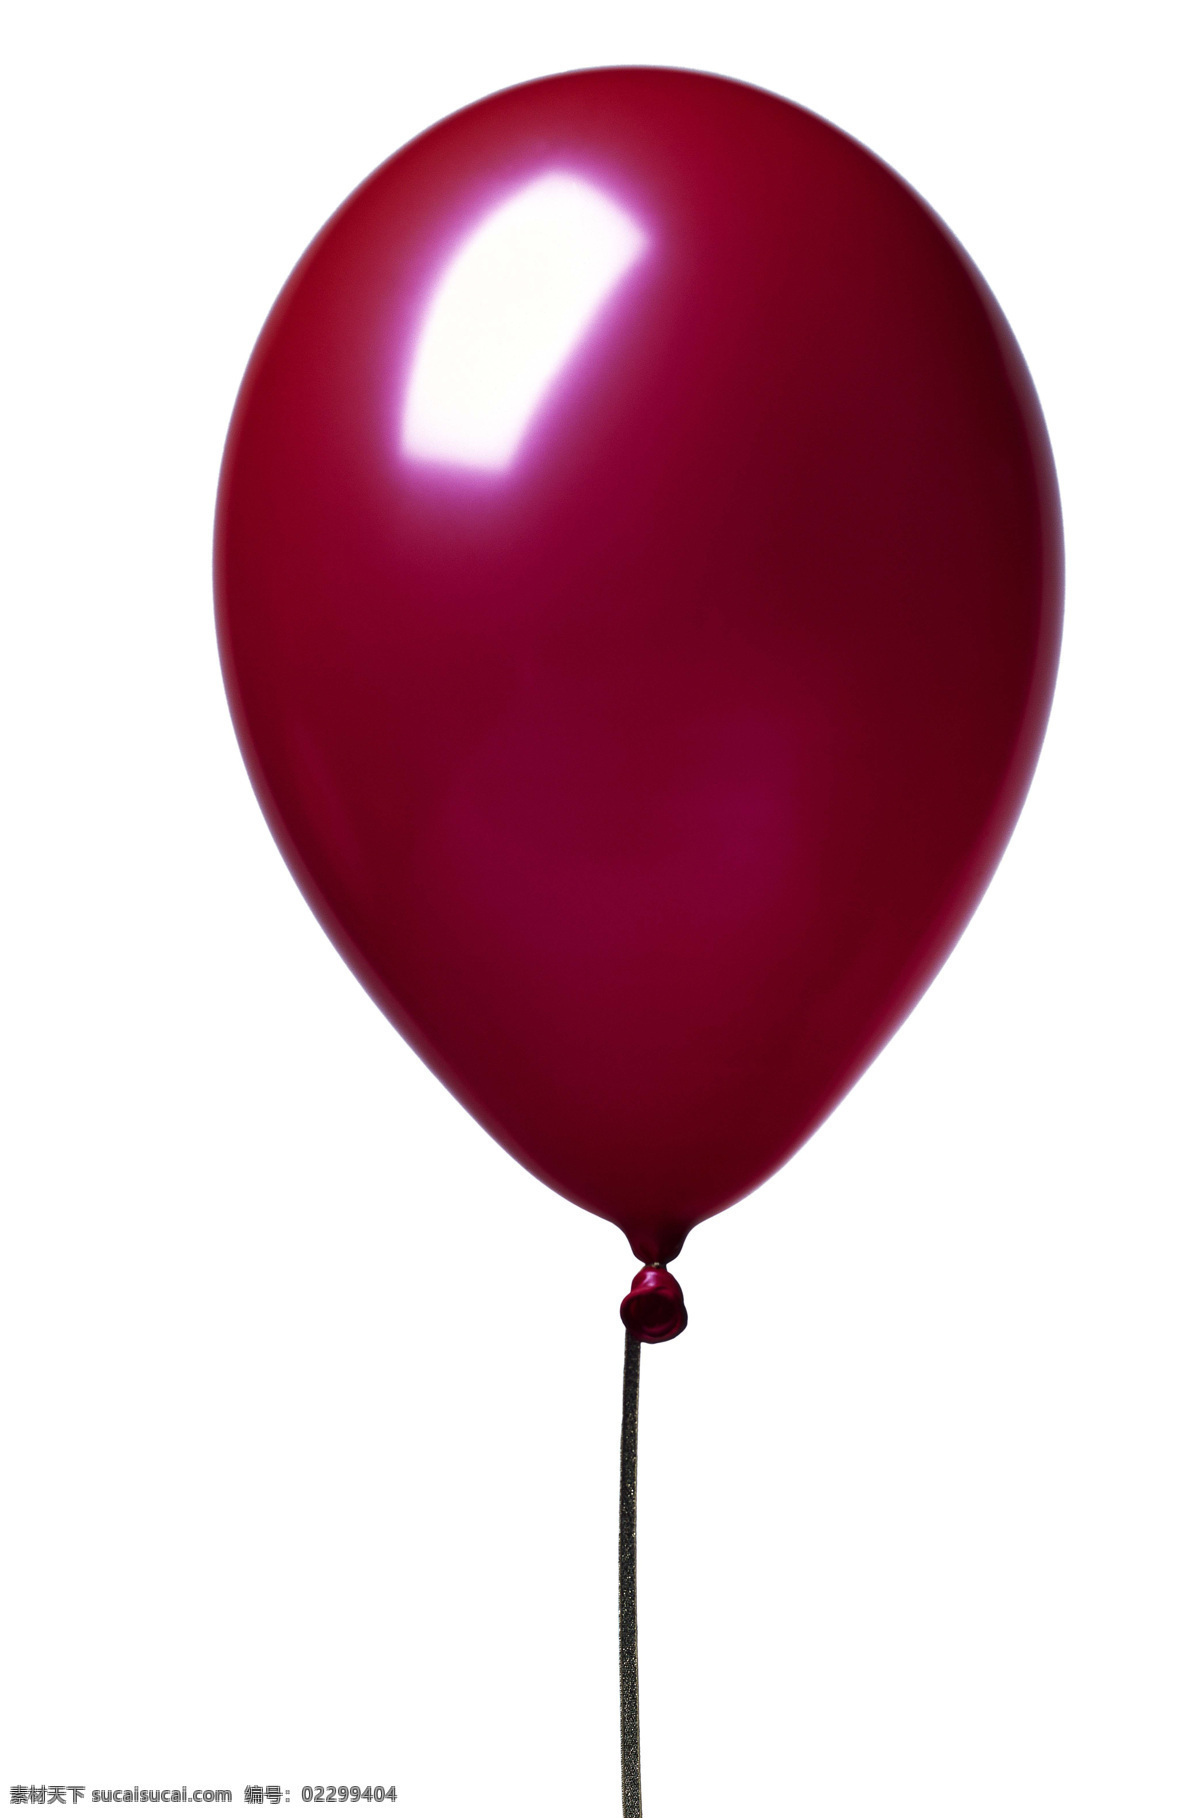 气球 300 设计图库 生活百科 生活用品 玩具 气球设计素材 气球模板下载 psd源文件